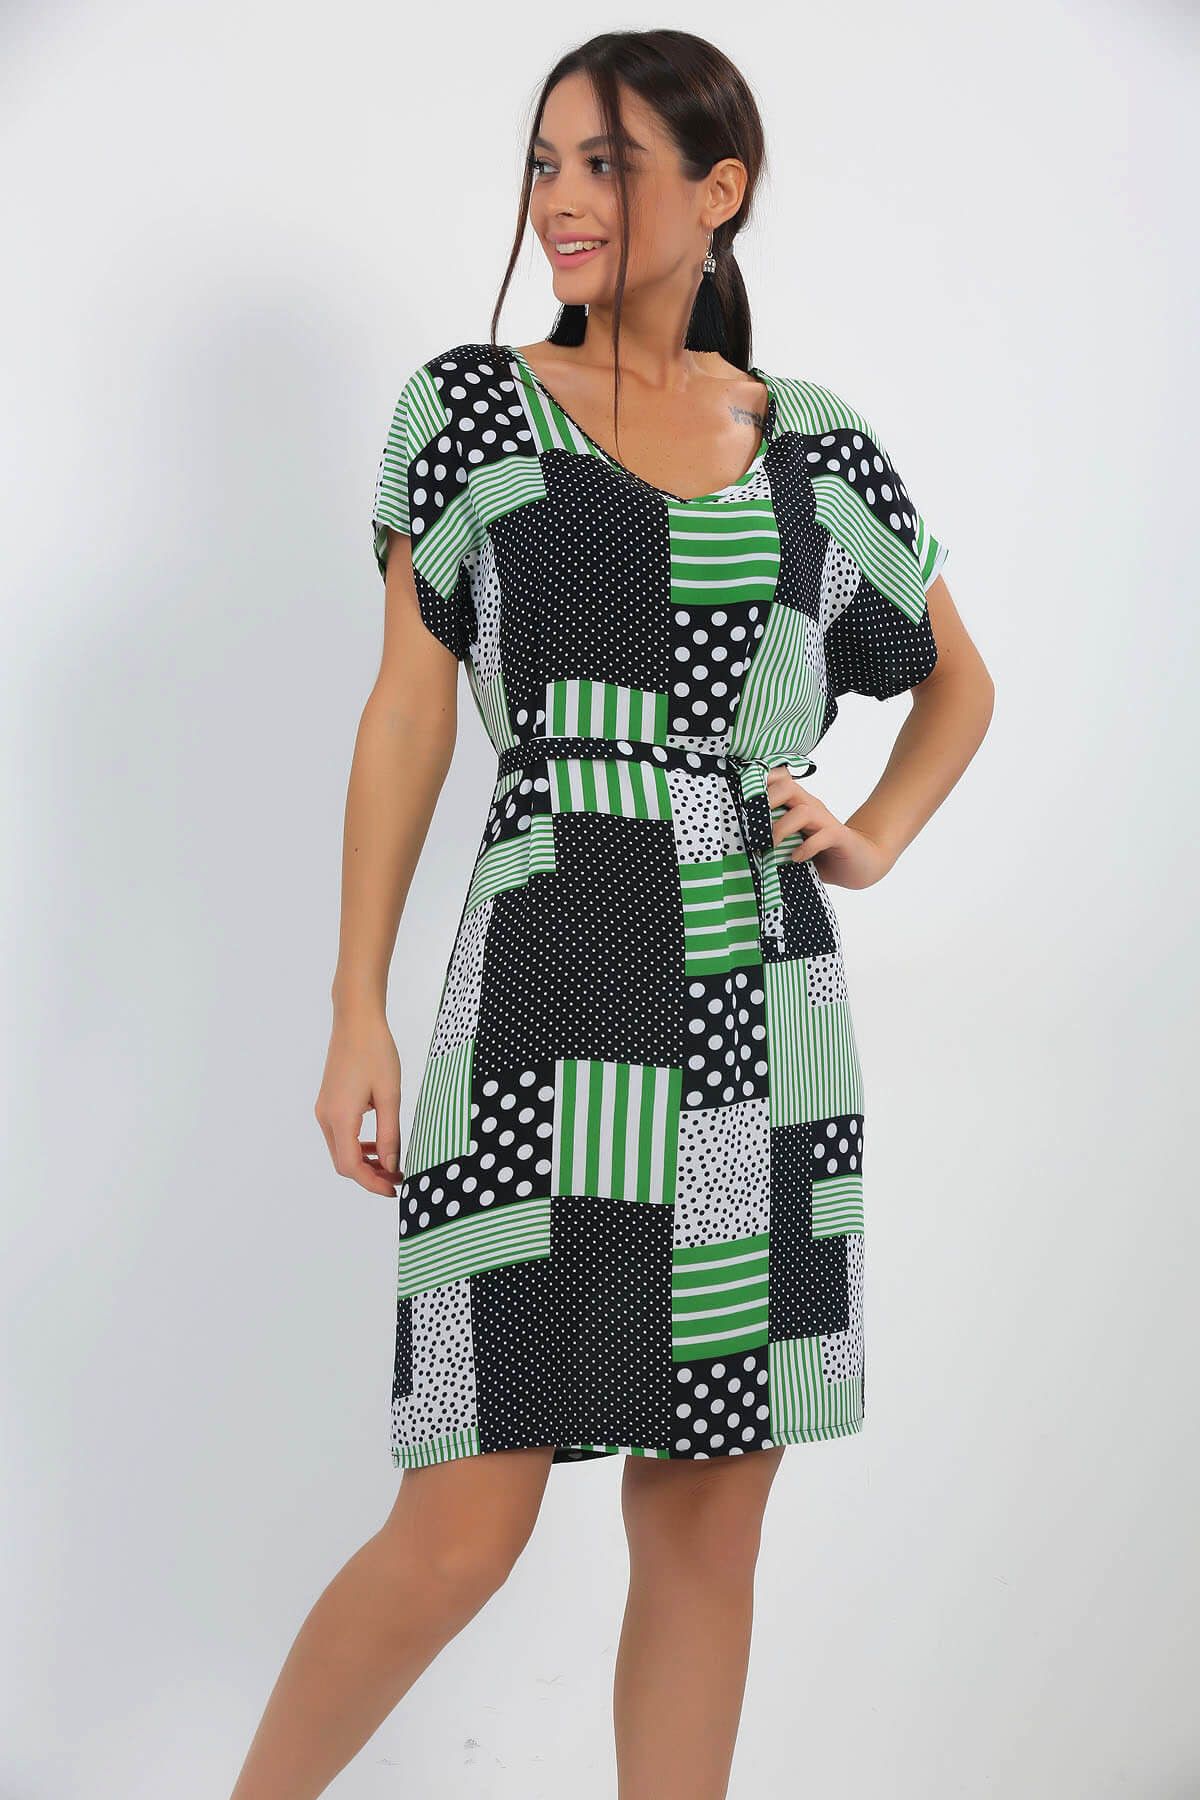 By Saygı Kadın Siyah-Yeşil V Yaka Puantiye Ve Çizgili Kuşaklı Kısa Kol Elbise S-18Y1010122